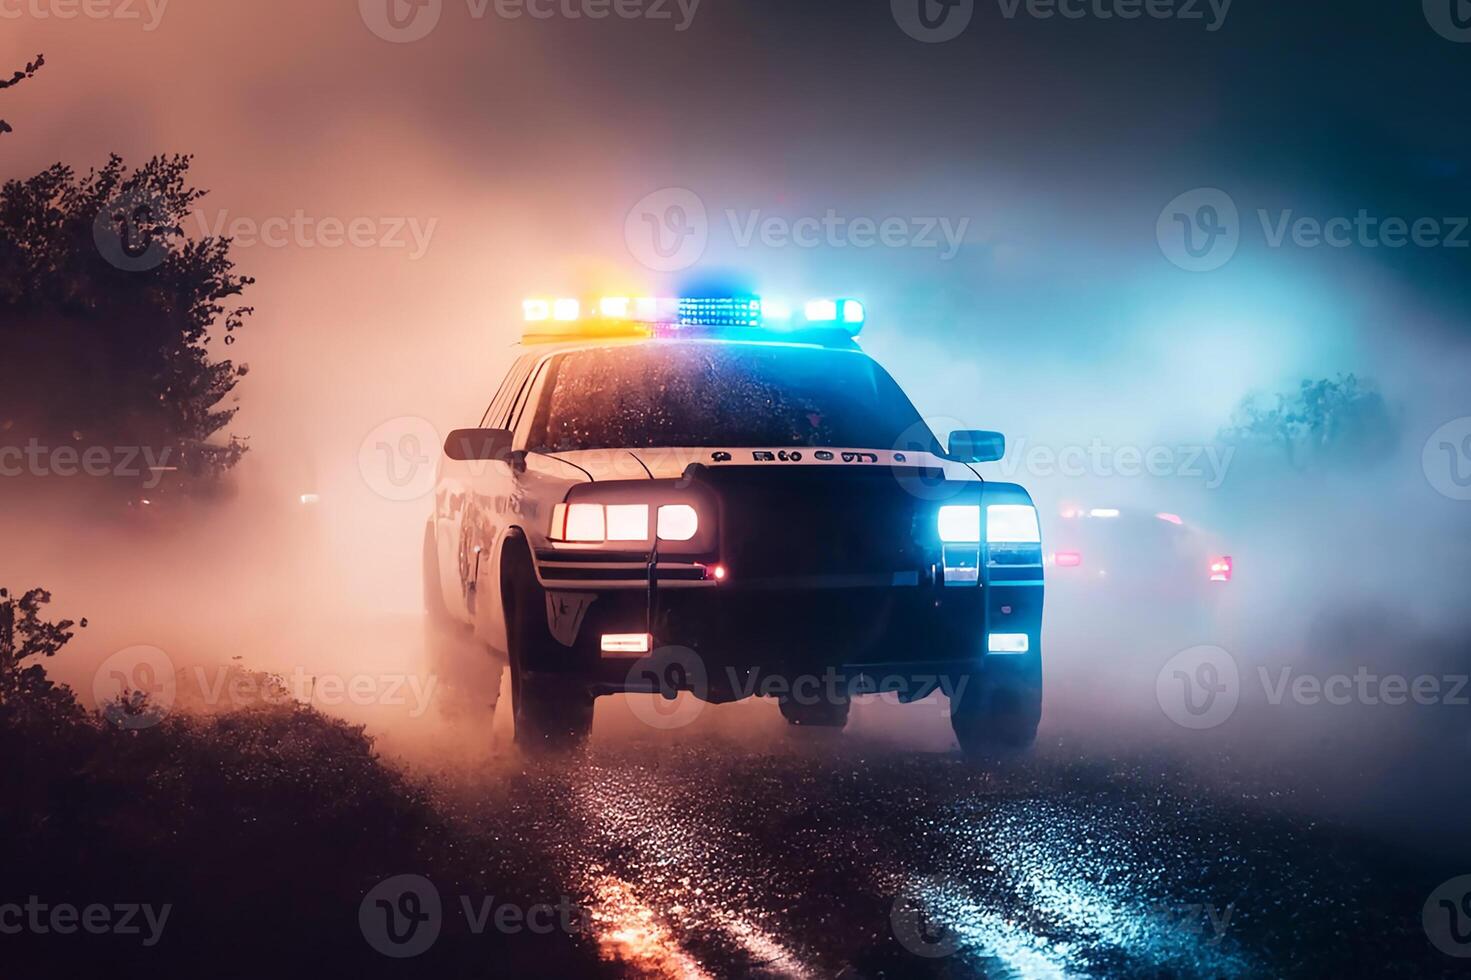 https://static.vecteezy.com/ti/fotos-kostenlos/p1/22935249-polizei-beleuchtung-und-ein-polizei-auto-auf-das-strasse-generativ-ai-foto.jpg